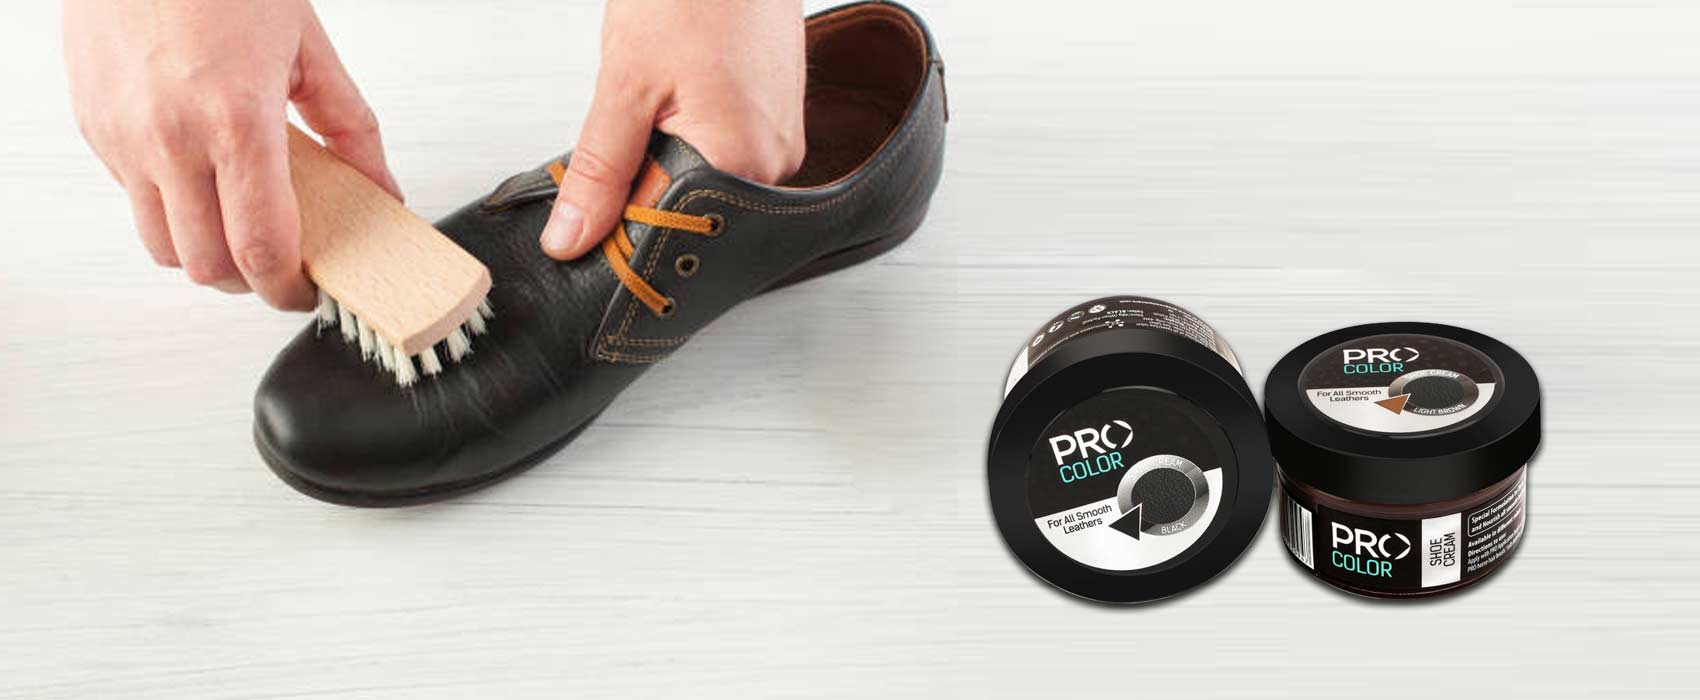 shoe polish kit